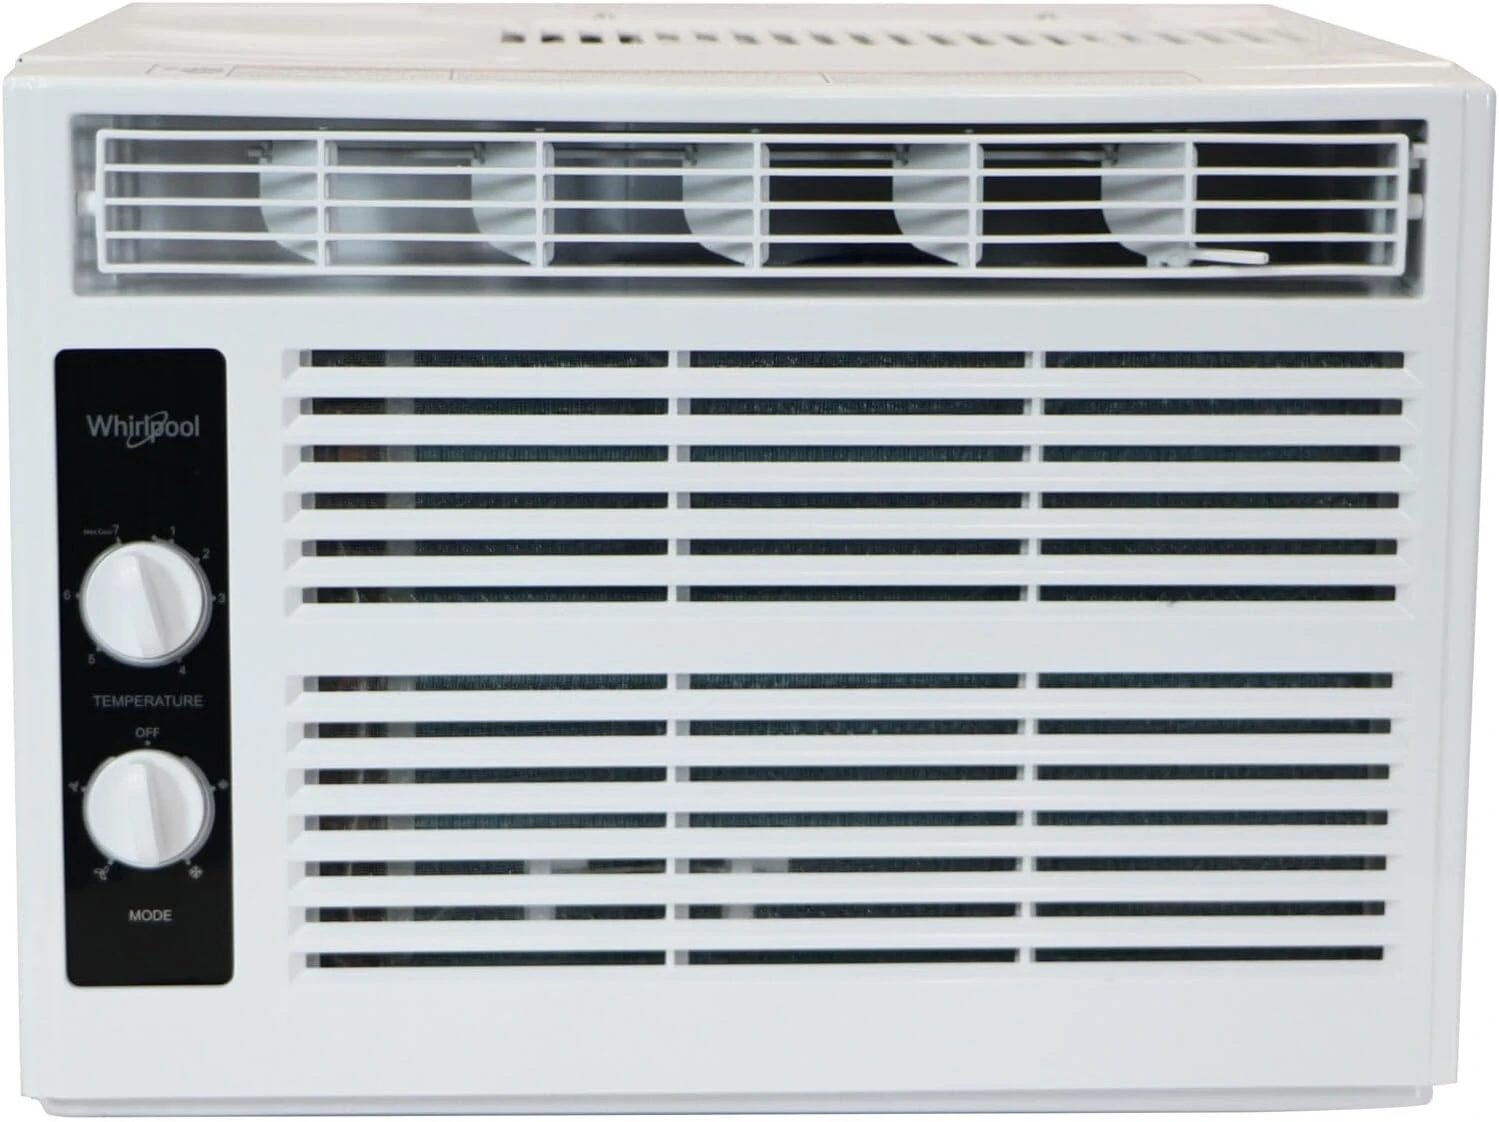 

BTU 115V Window-Mounted Air Conditioner with Mechanical Controls Aire acomdicionado para cuarto Mini airco Portable ac Mini ac a